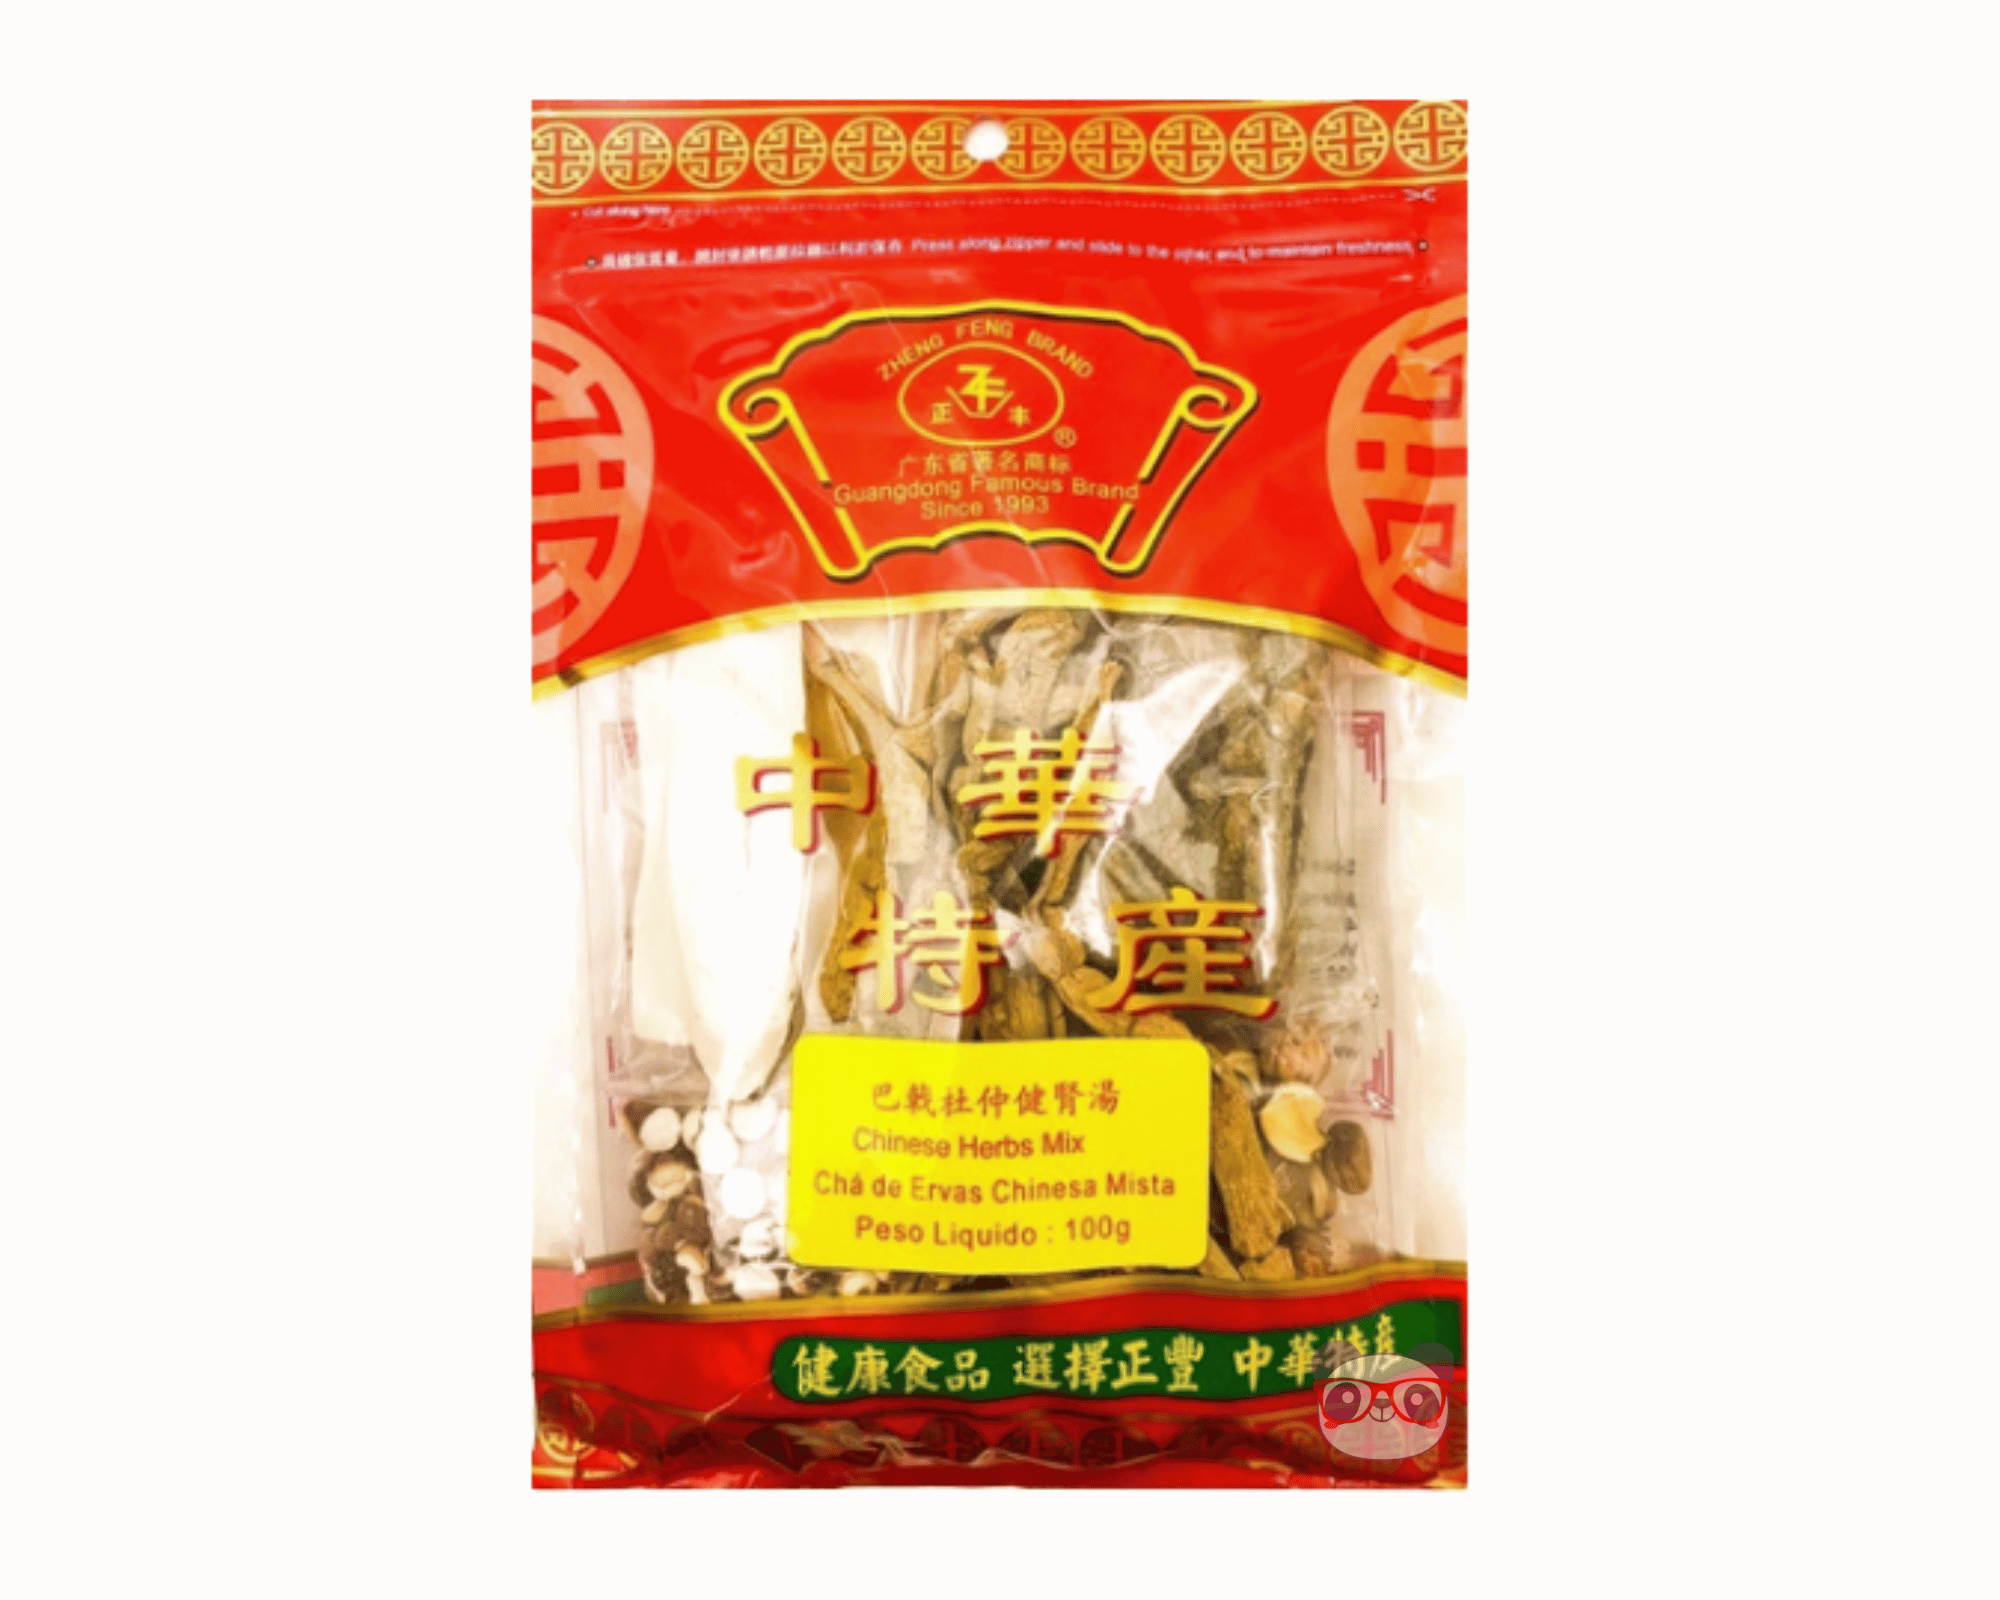 Chá De Ervas Chinesa Mista - Zheng Feng Brand 100g